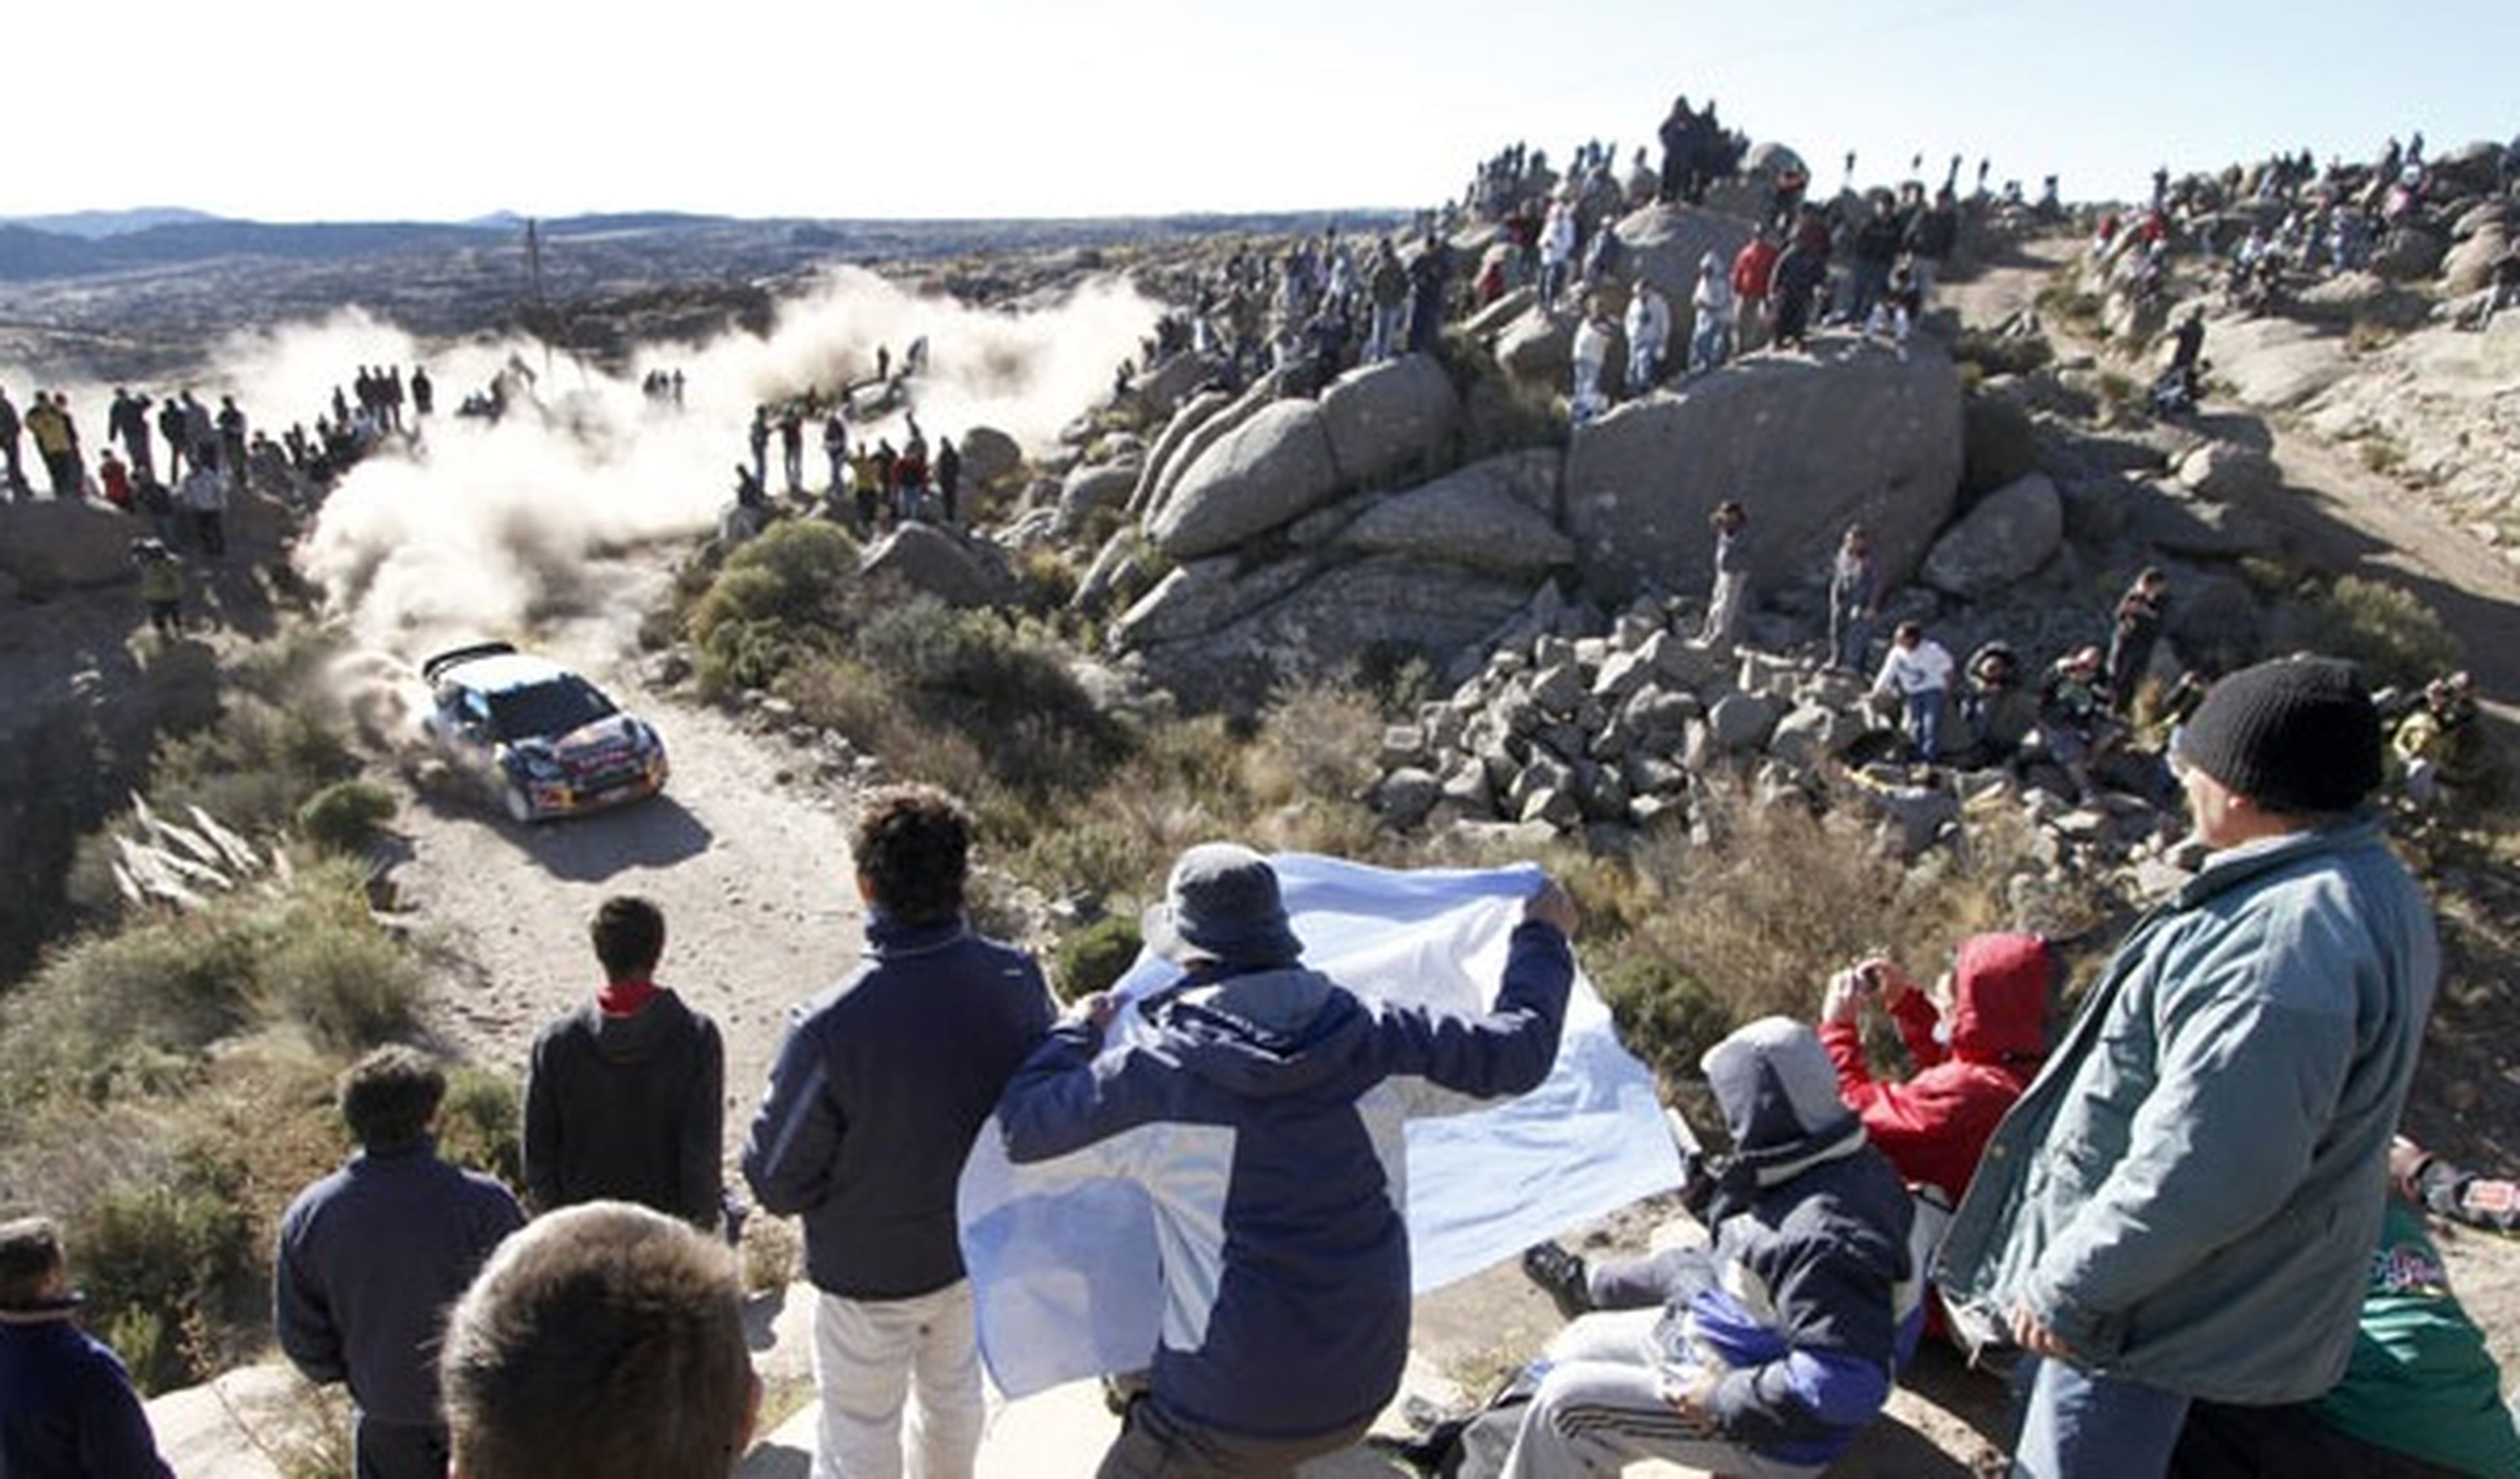 Ogier en el Rally de Argentina 2011